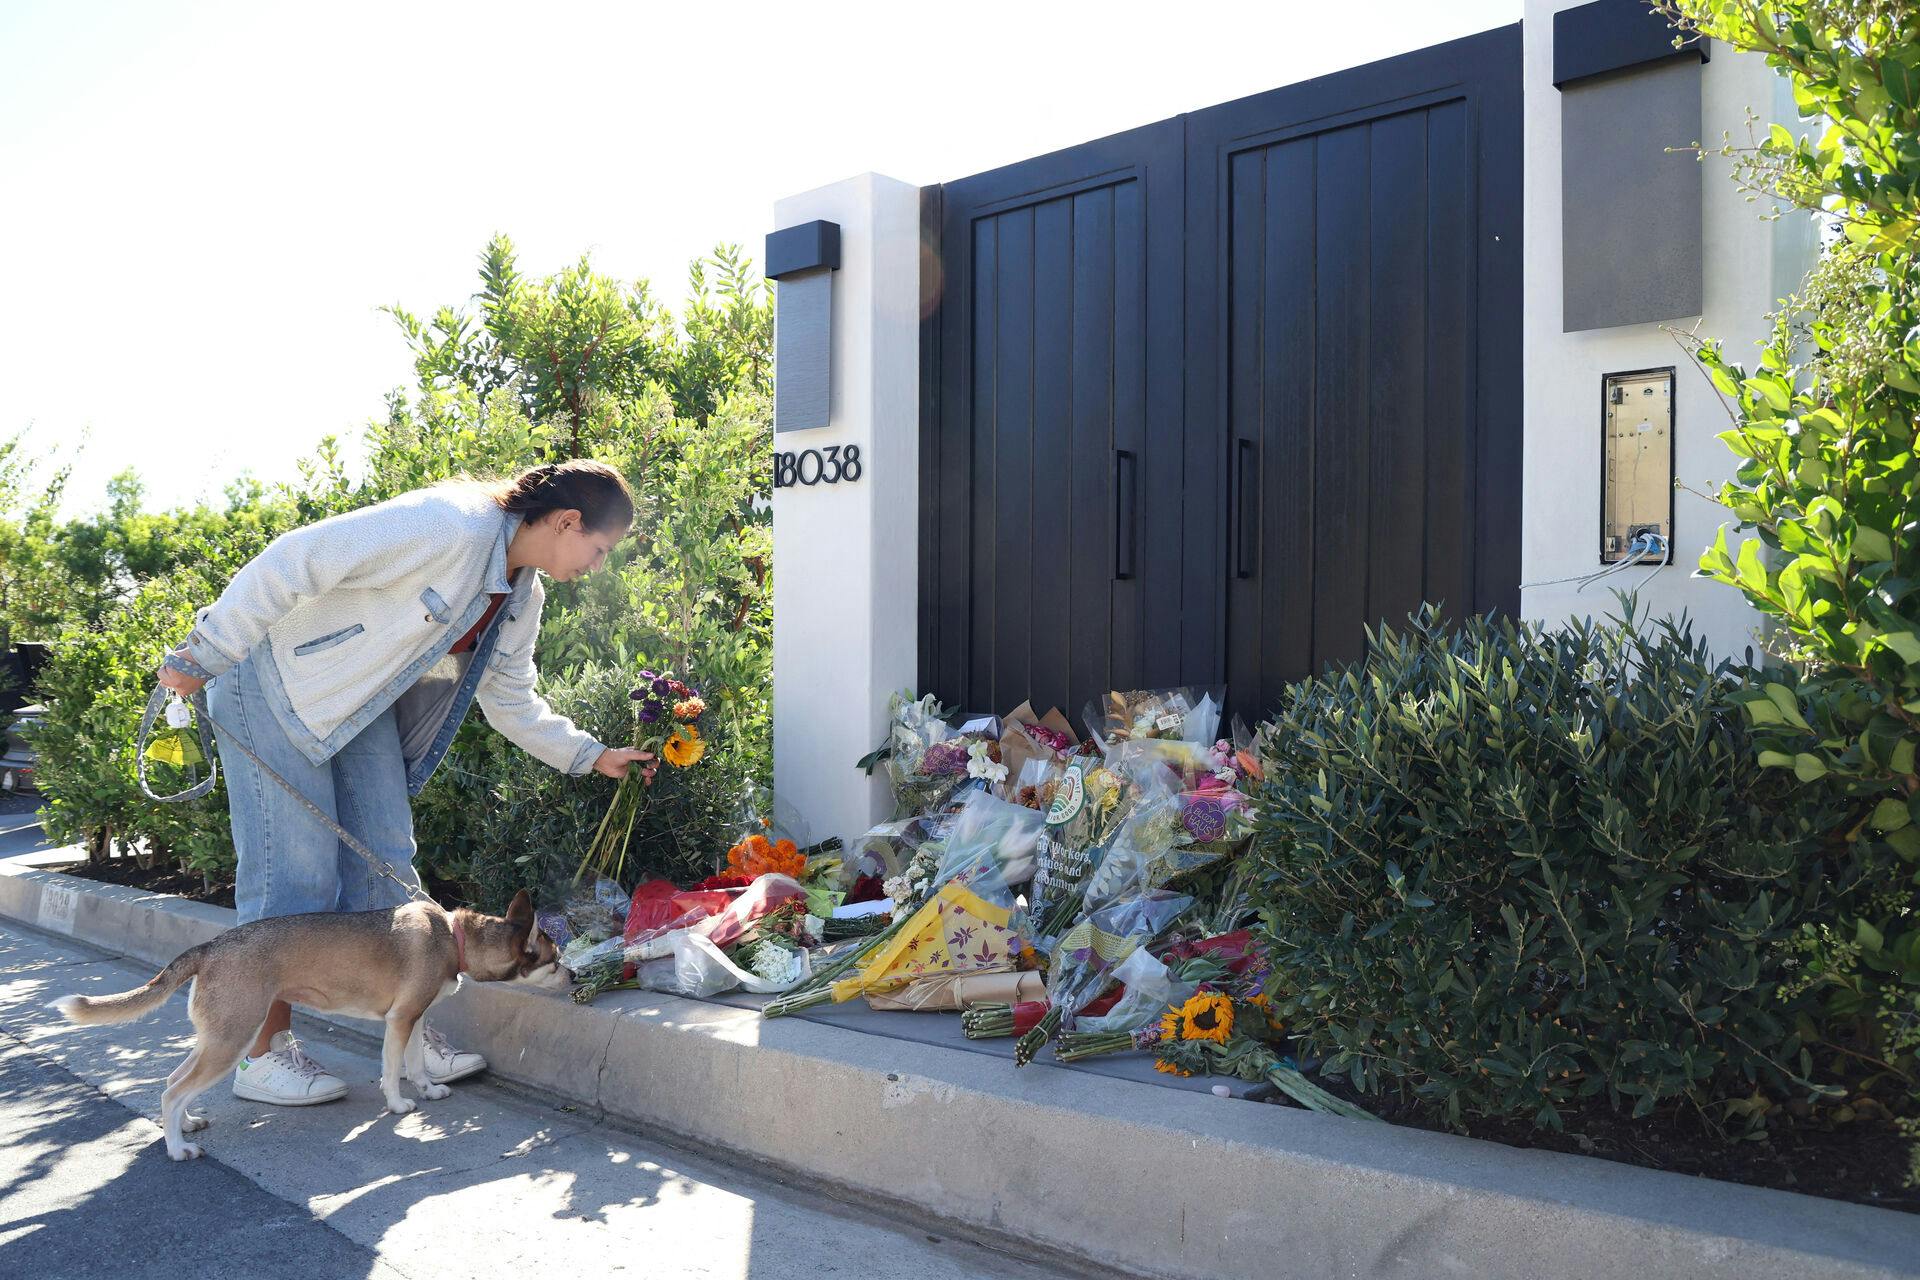 Fans lagde hundredevis af blomster foran indgangen til Matthew Perrys hjem i Pacific Palisades, Californien efter nyheden om hans død.